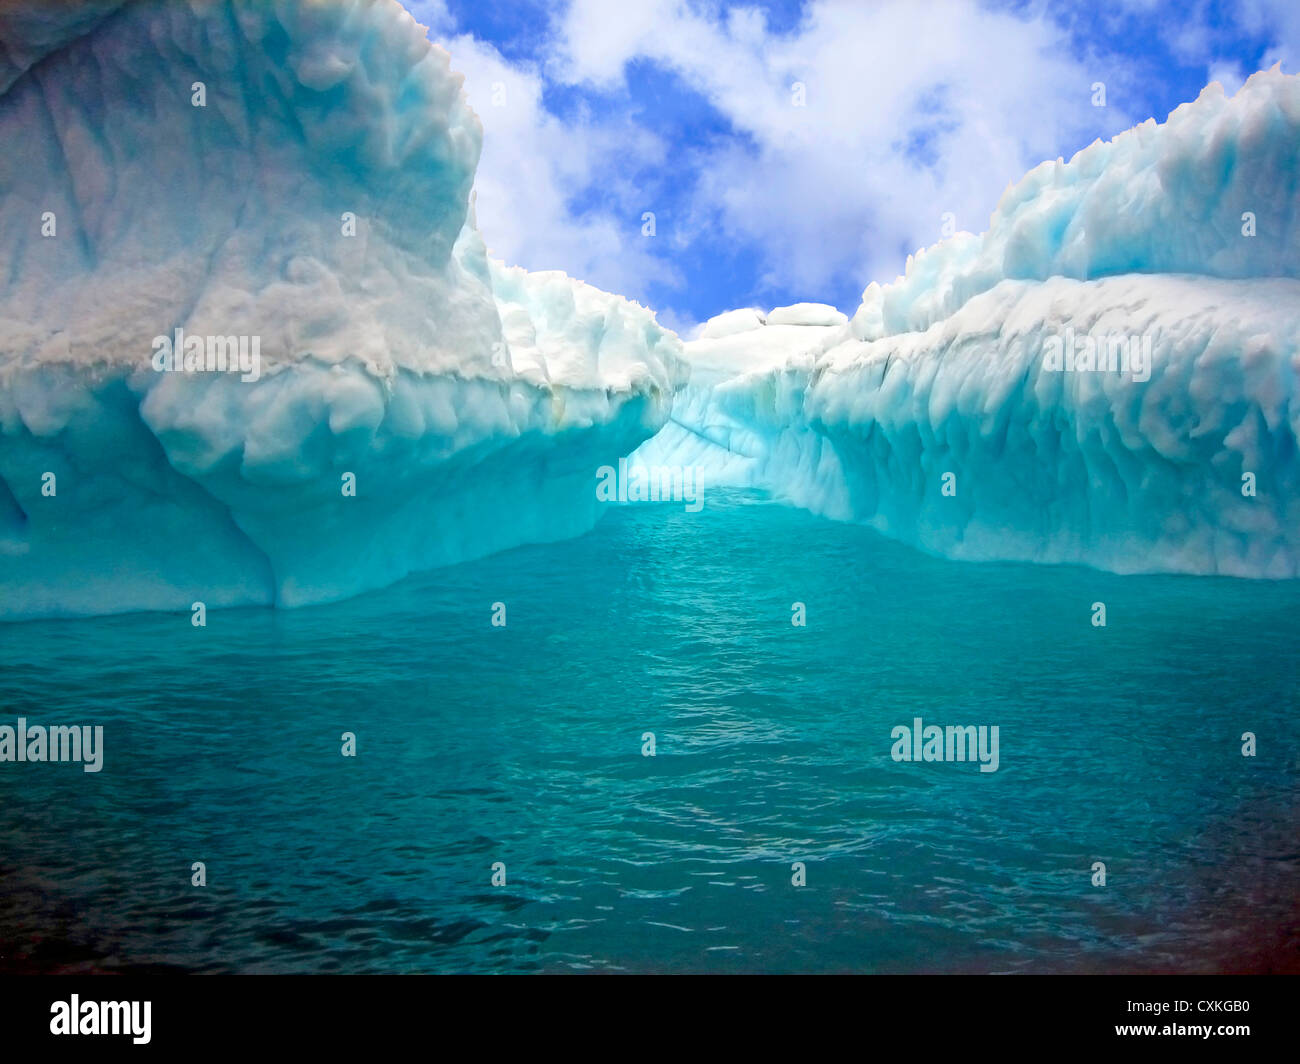 Close up of Iceberg avec cannelures et honeycomb textures, île de Gibbs, mer de Weddell, l'Antarctique, régions polaires Banque D'Images